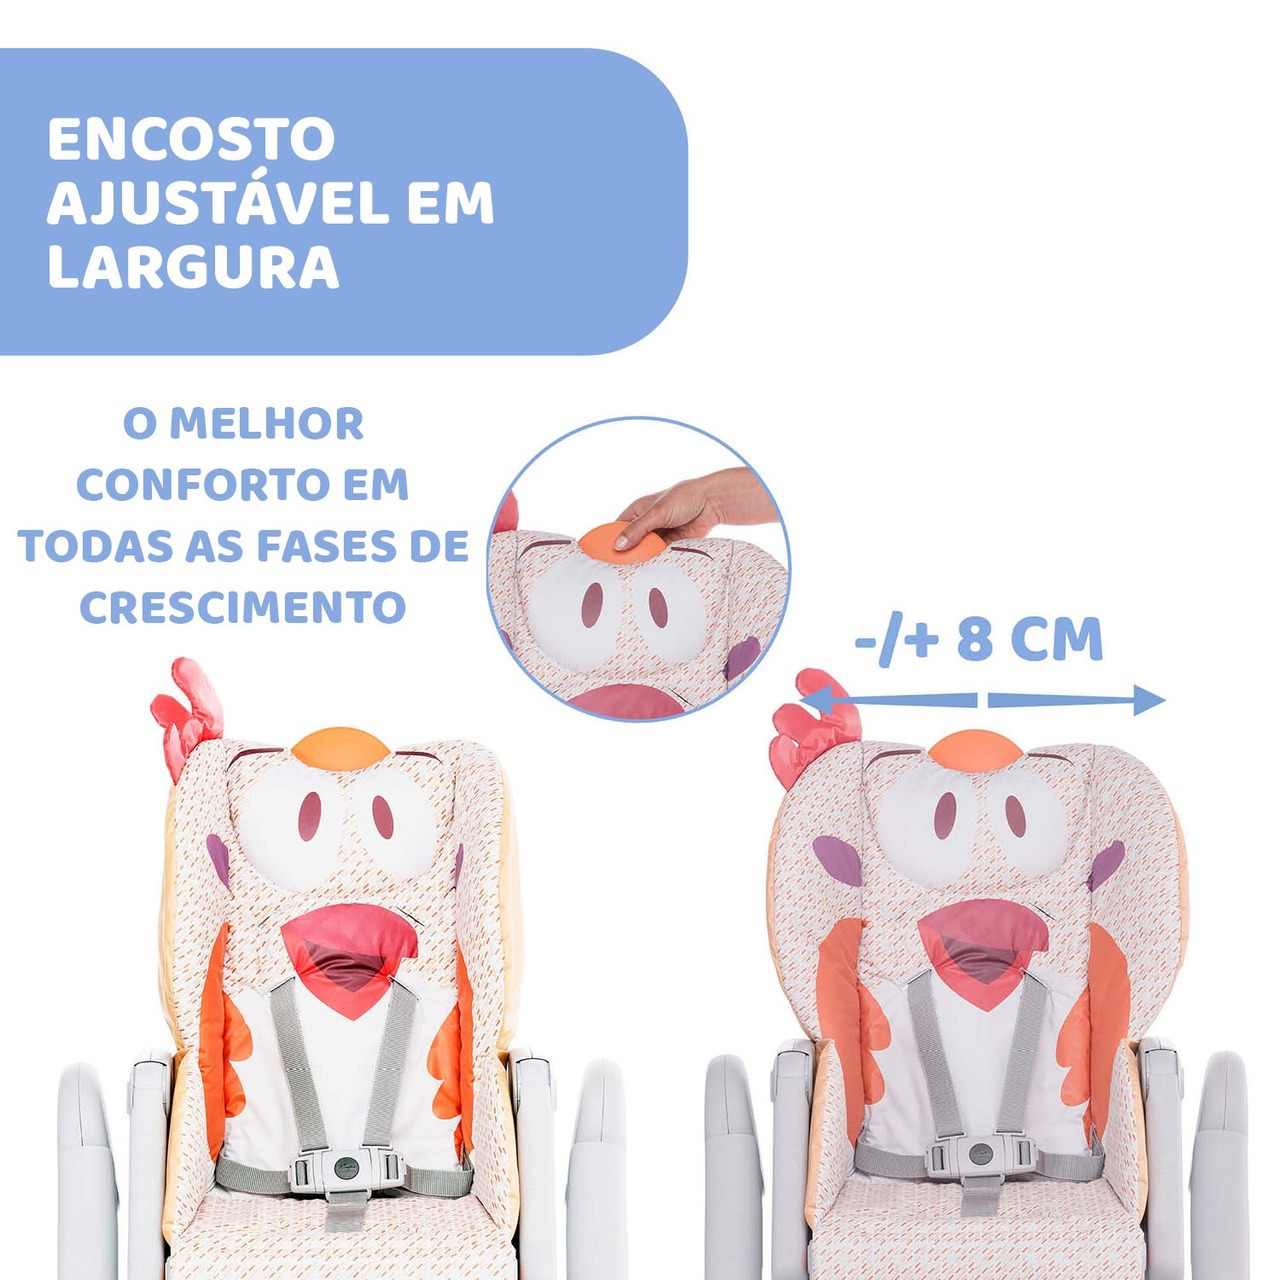 Cadeira de Papa Polly 2 Start Baby Elefante - Chicco - GraviDicas Store -  Ajudamos Mães a simplificar a Difícil e Linda Jornada da Maternidade